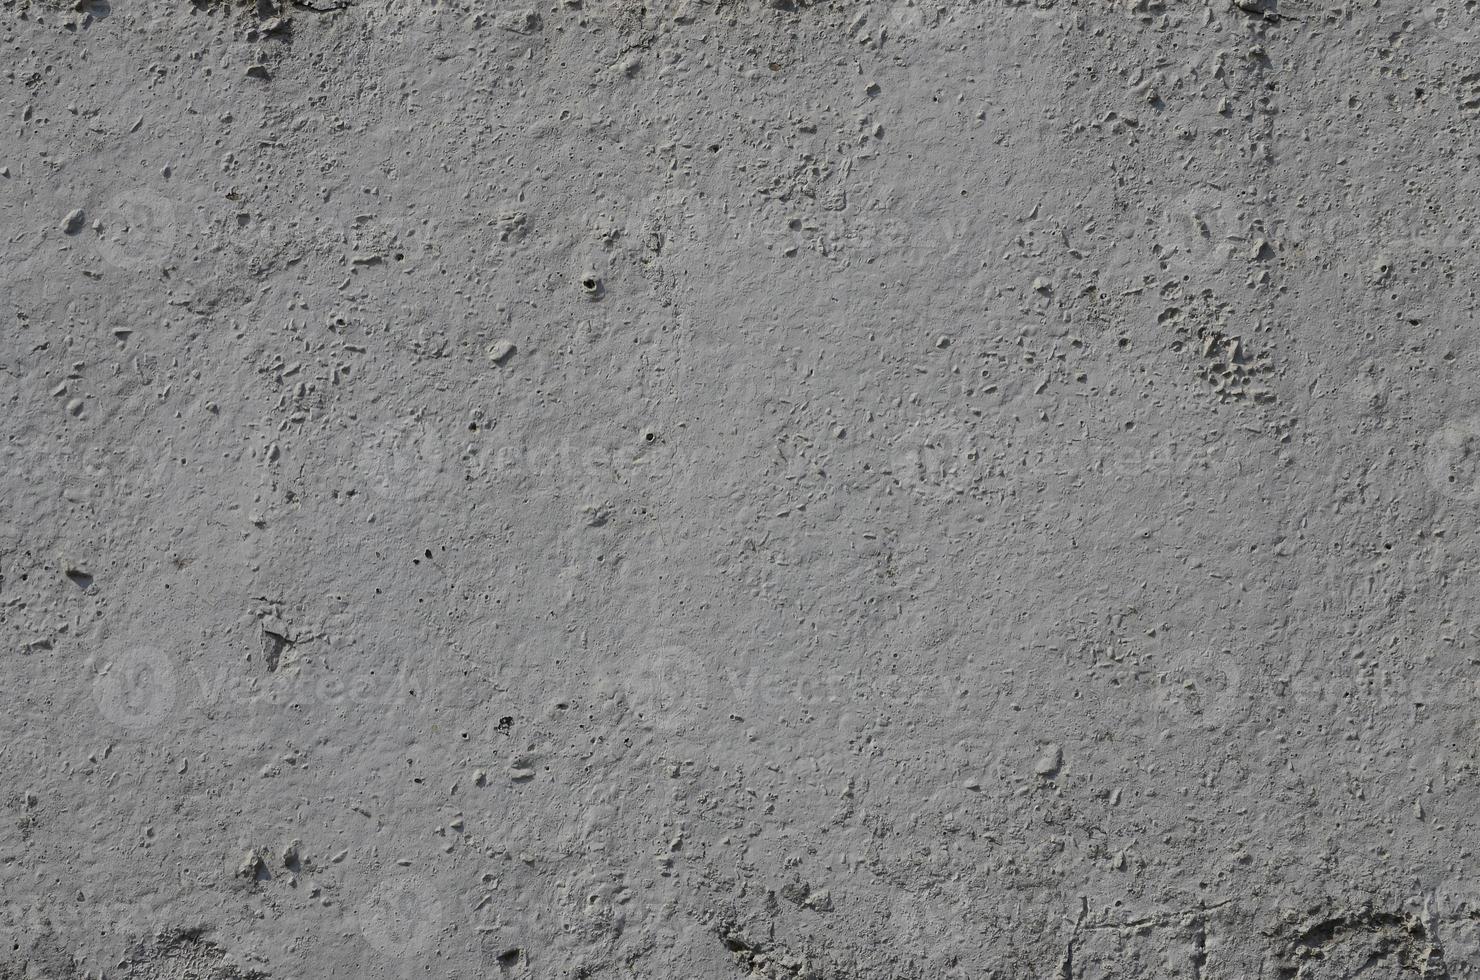 texture de l'ancien mur de béton gaufré de couleur grise. image de fond d'un produit en béton photo